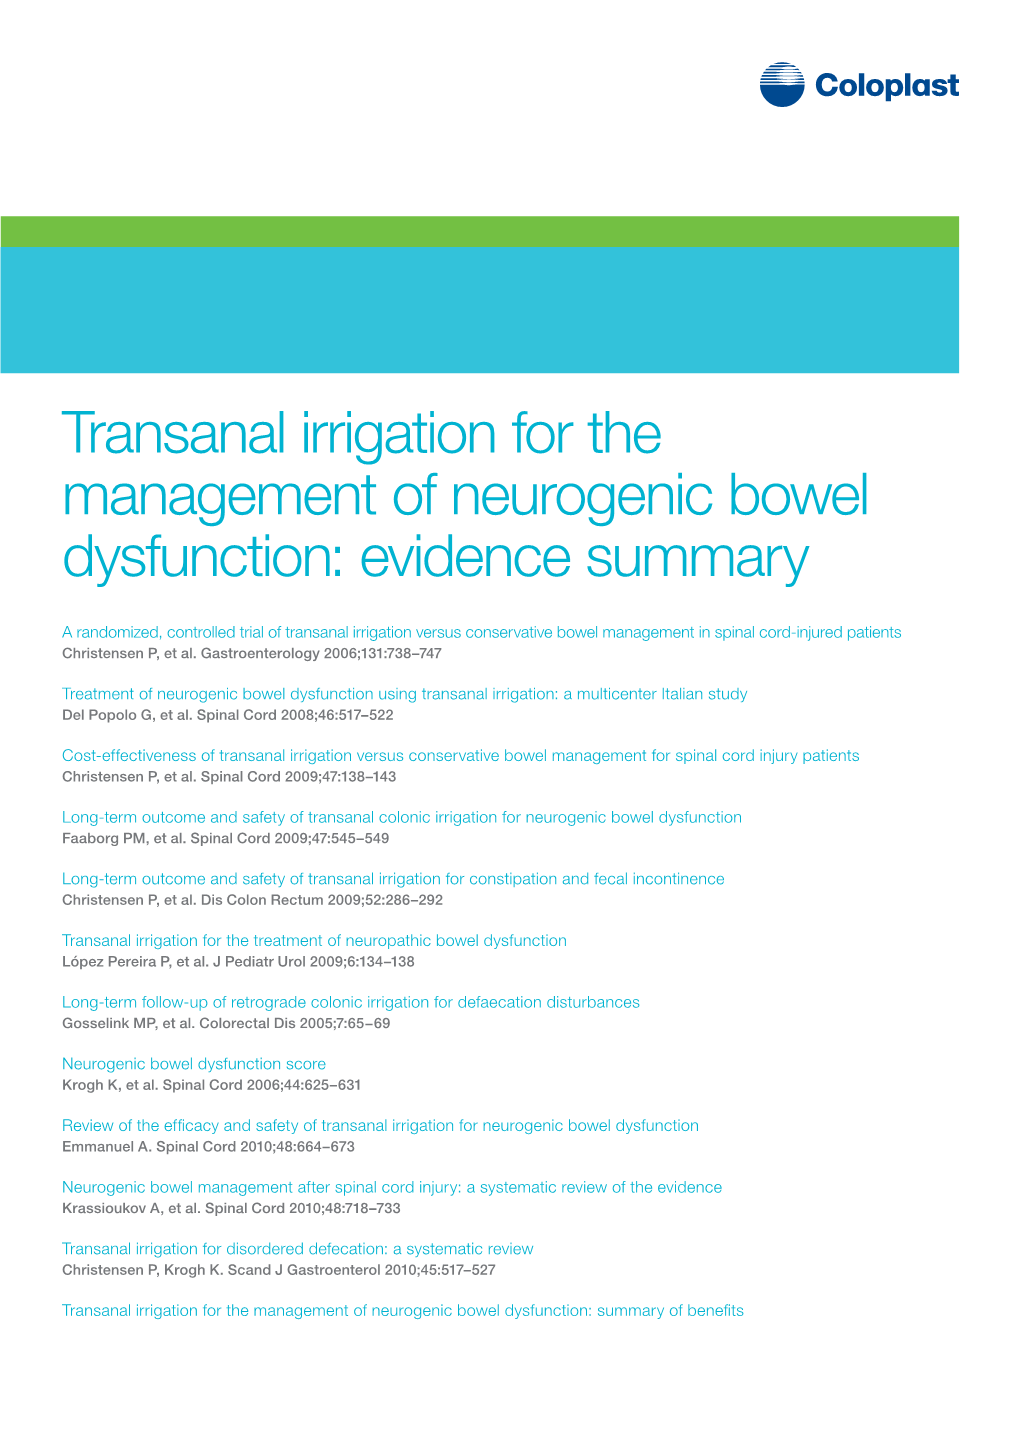 Transanal Irrigation for the Management of Neurogenic Bowel Dysfunction: Evidence Summary